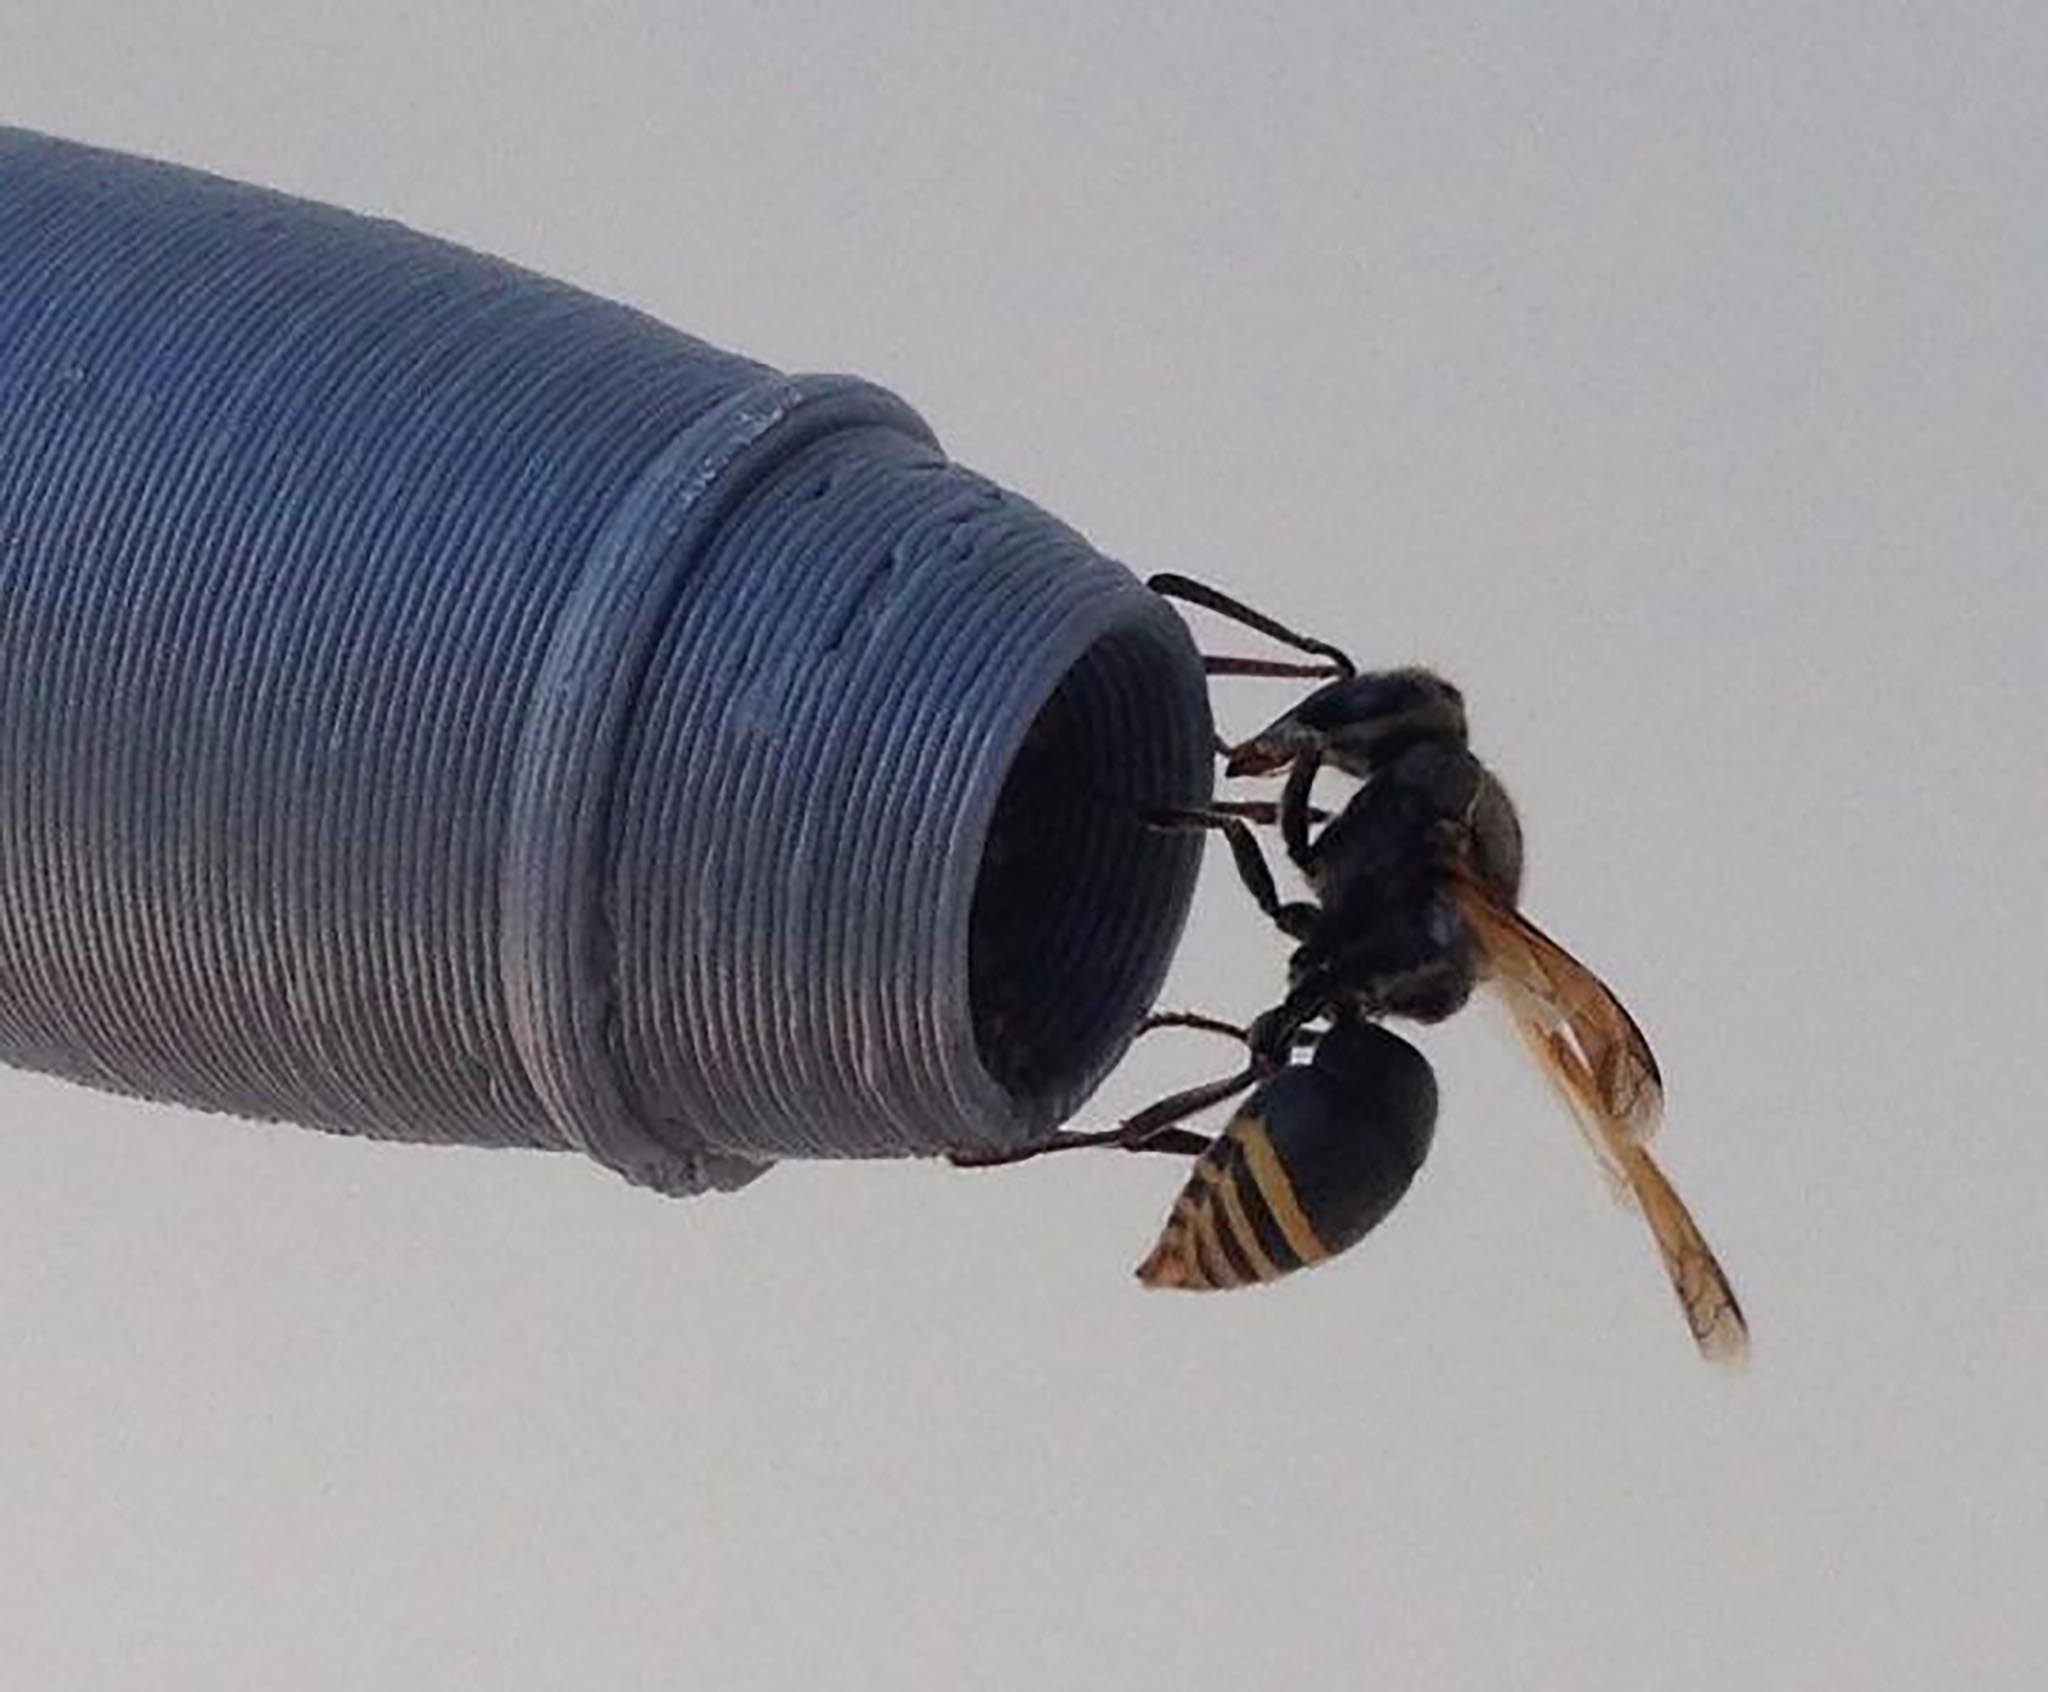 Keyhole wasps.jpg